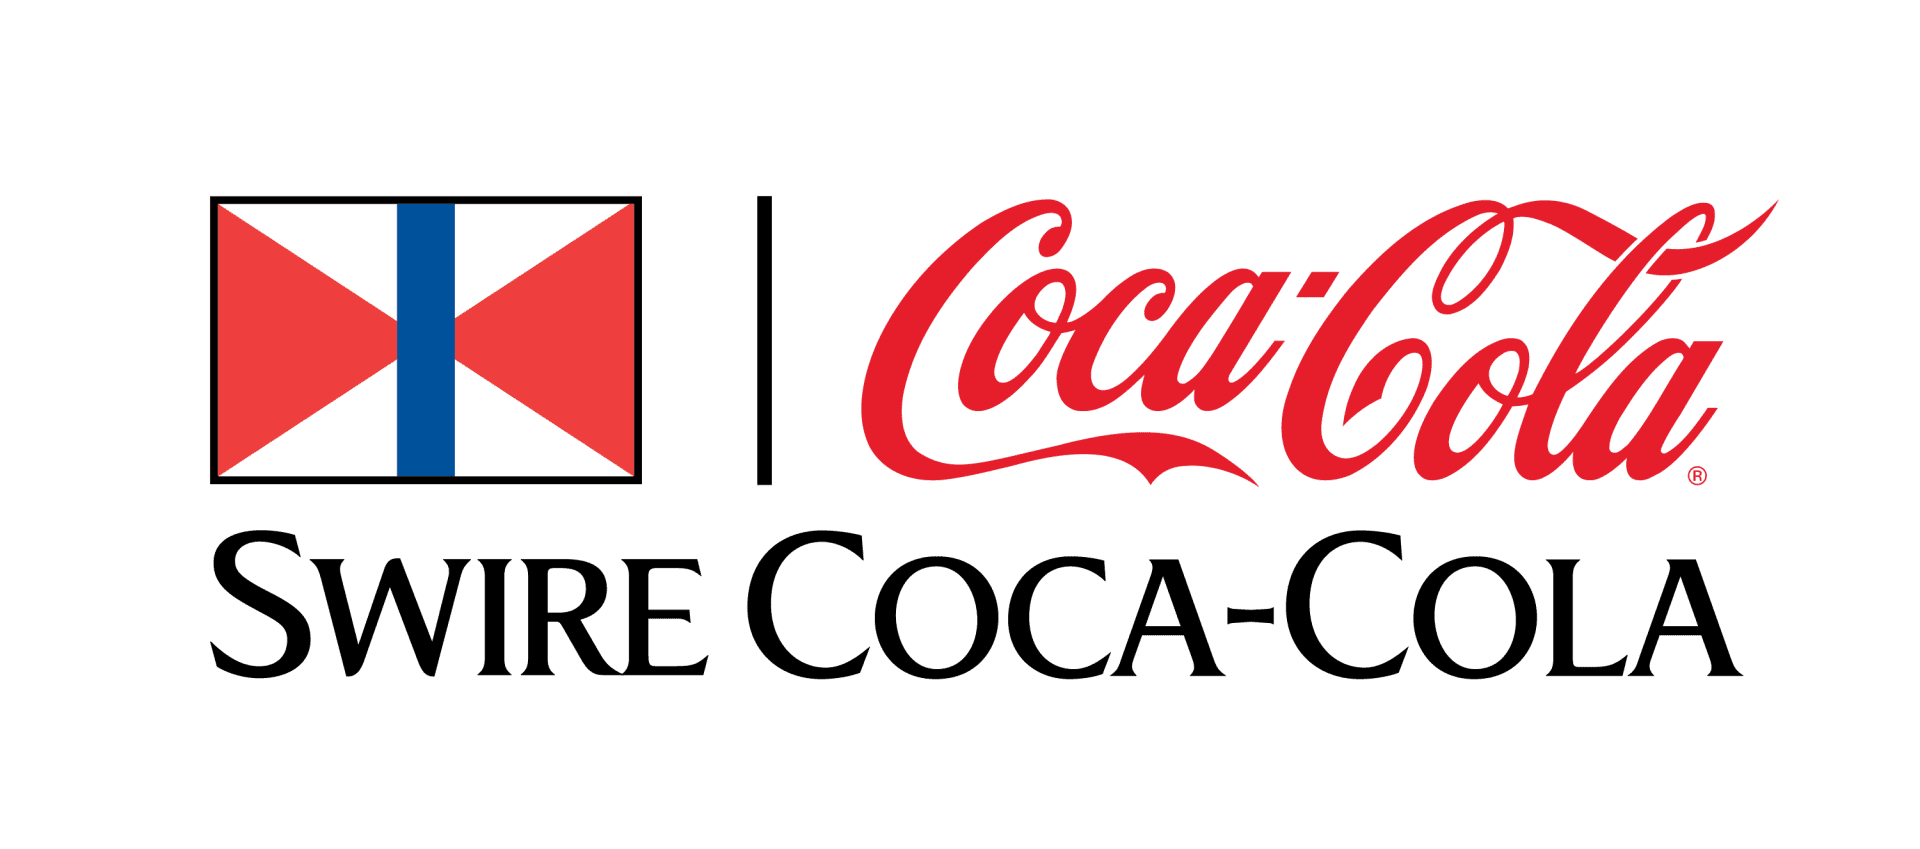 Swire Coca-cola logo